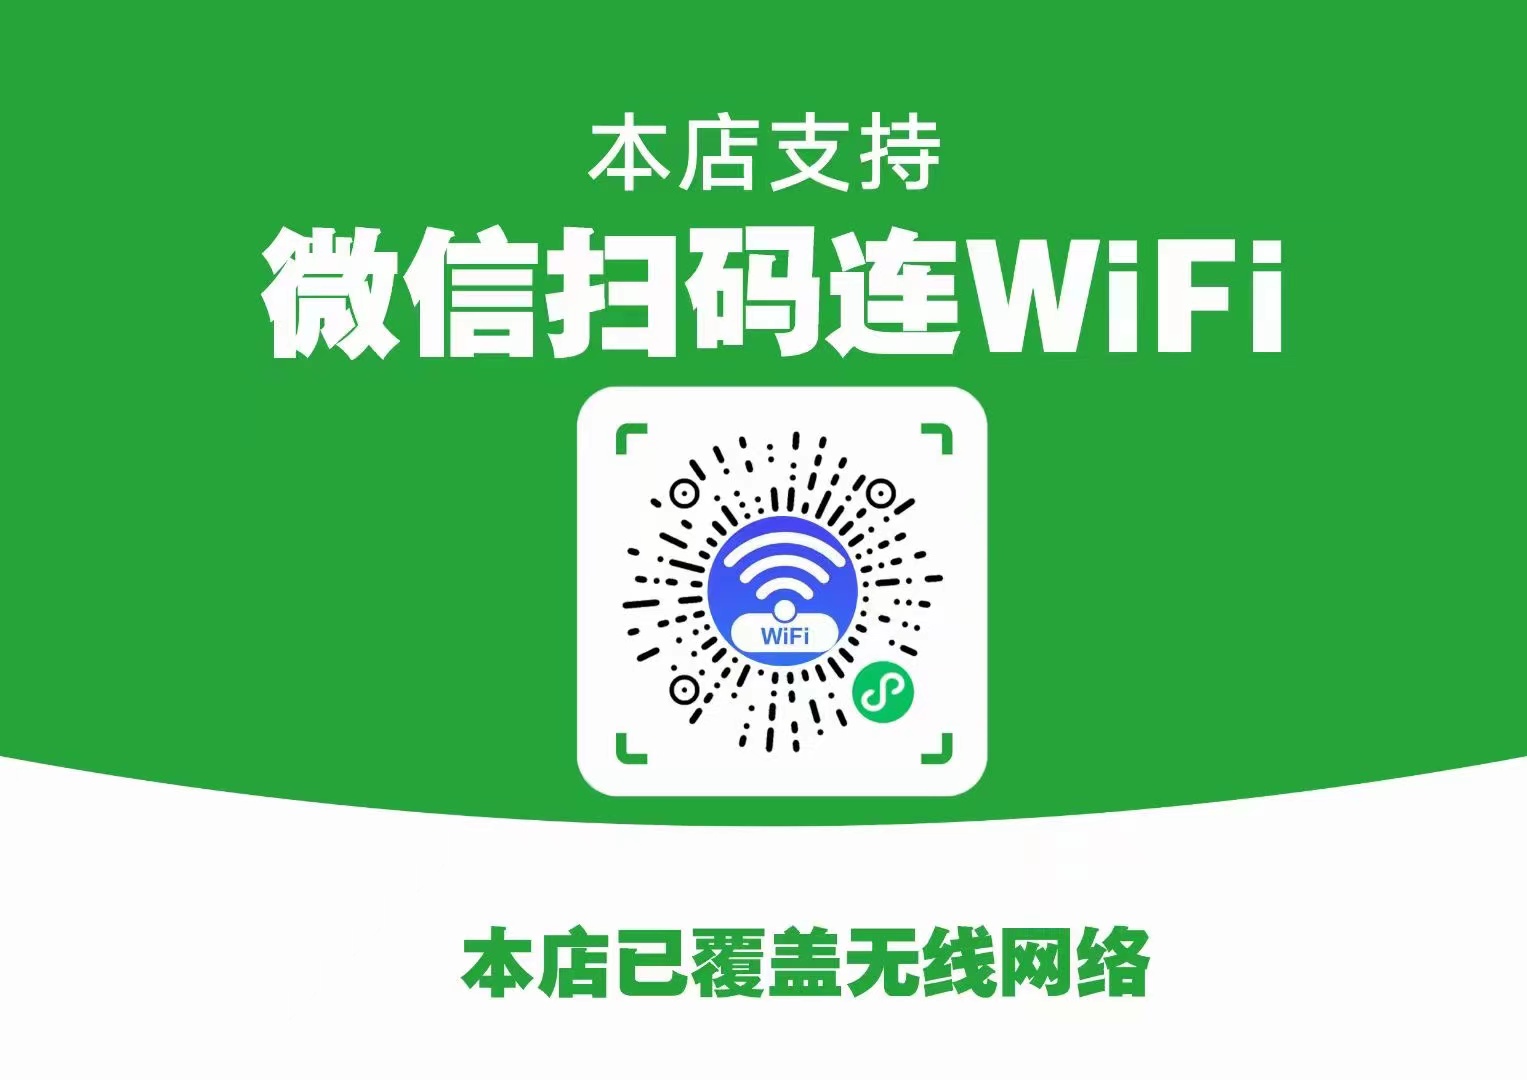 【WiFi大师专业版】躺赚10w+的WiFi程序，不可错过的创业机会-济南壹软网络科技